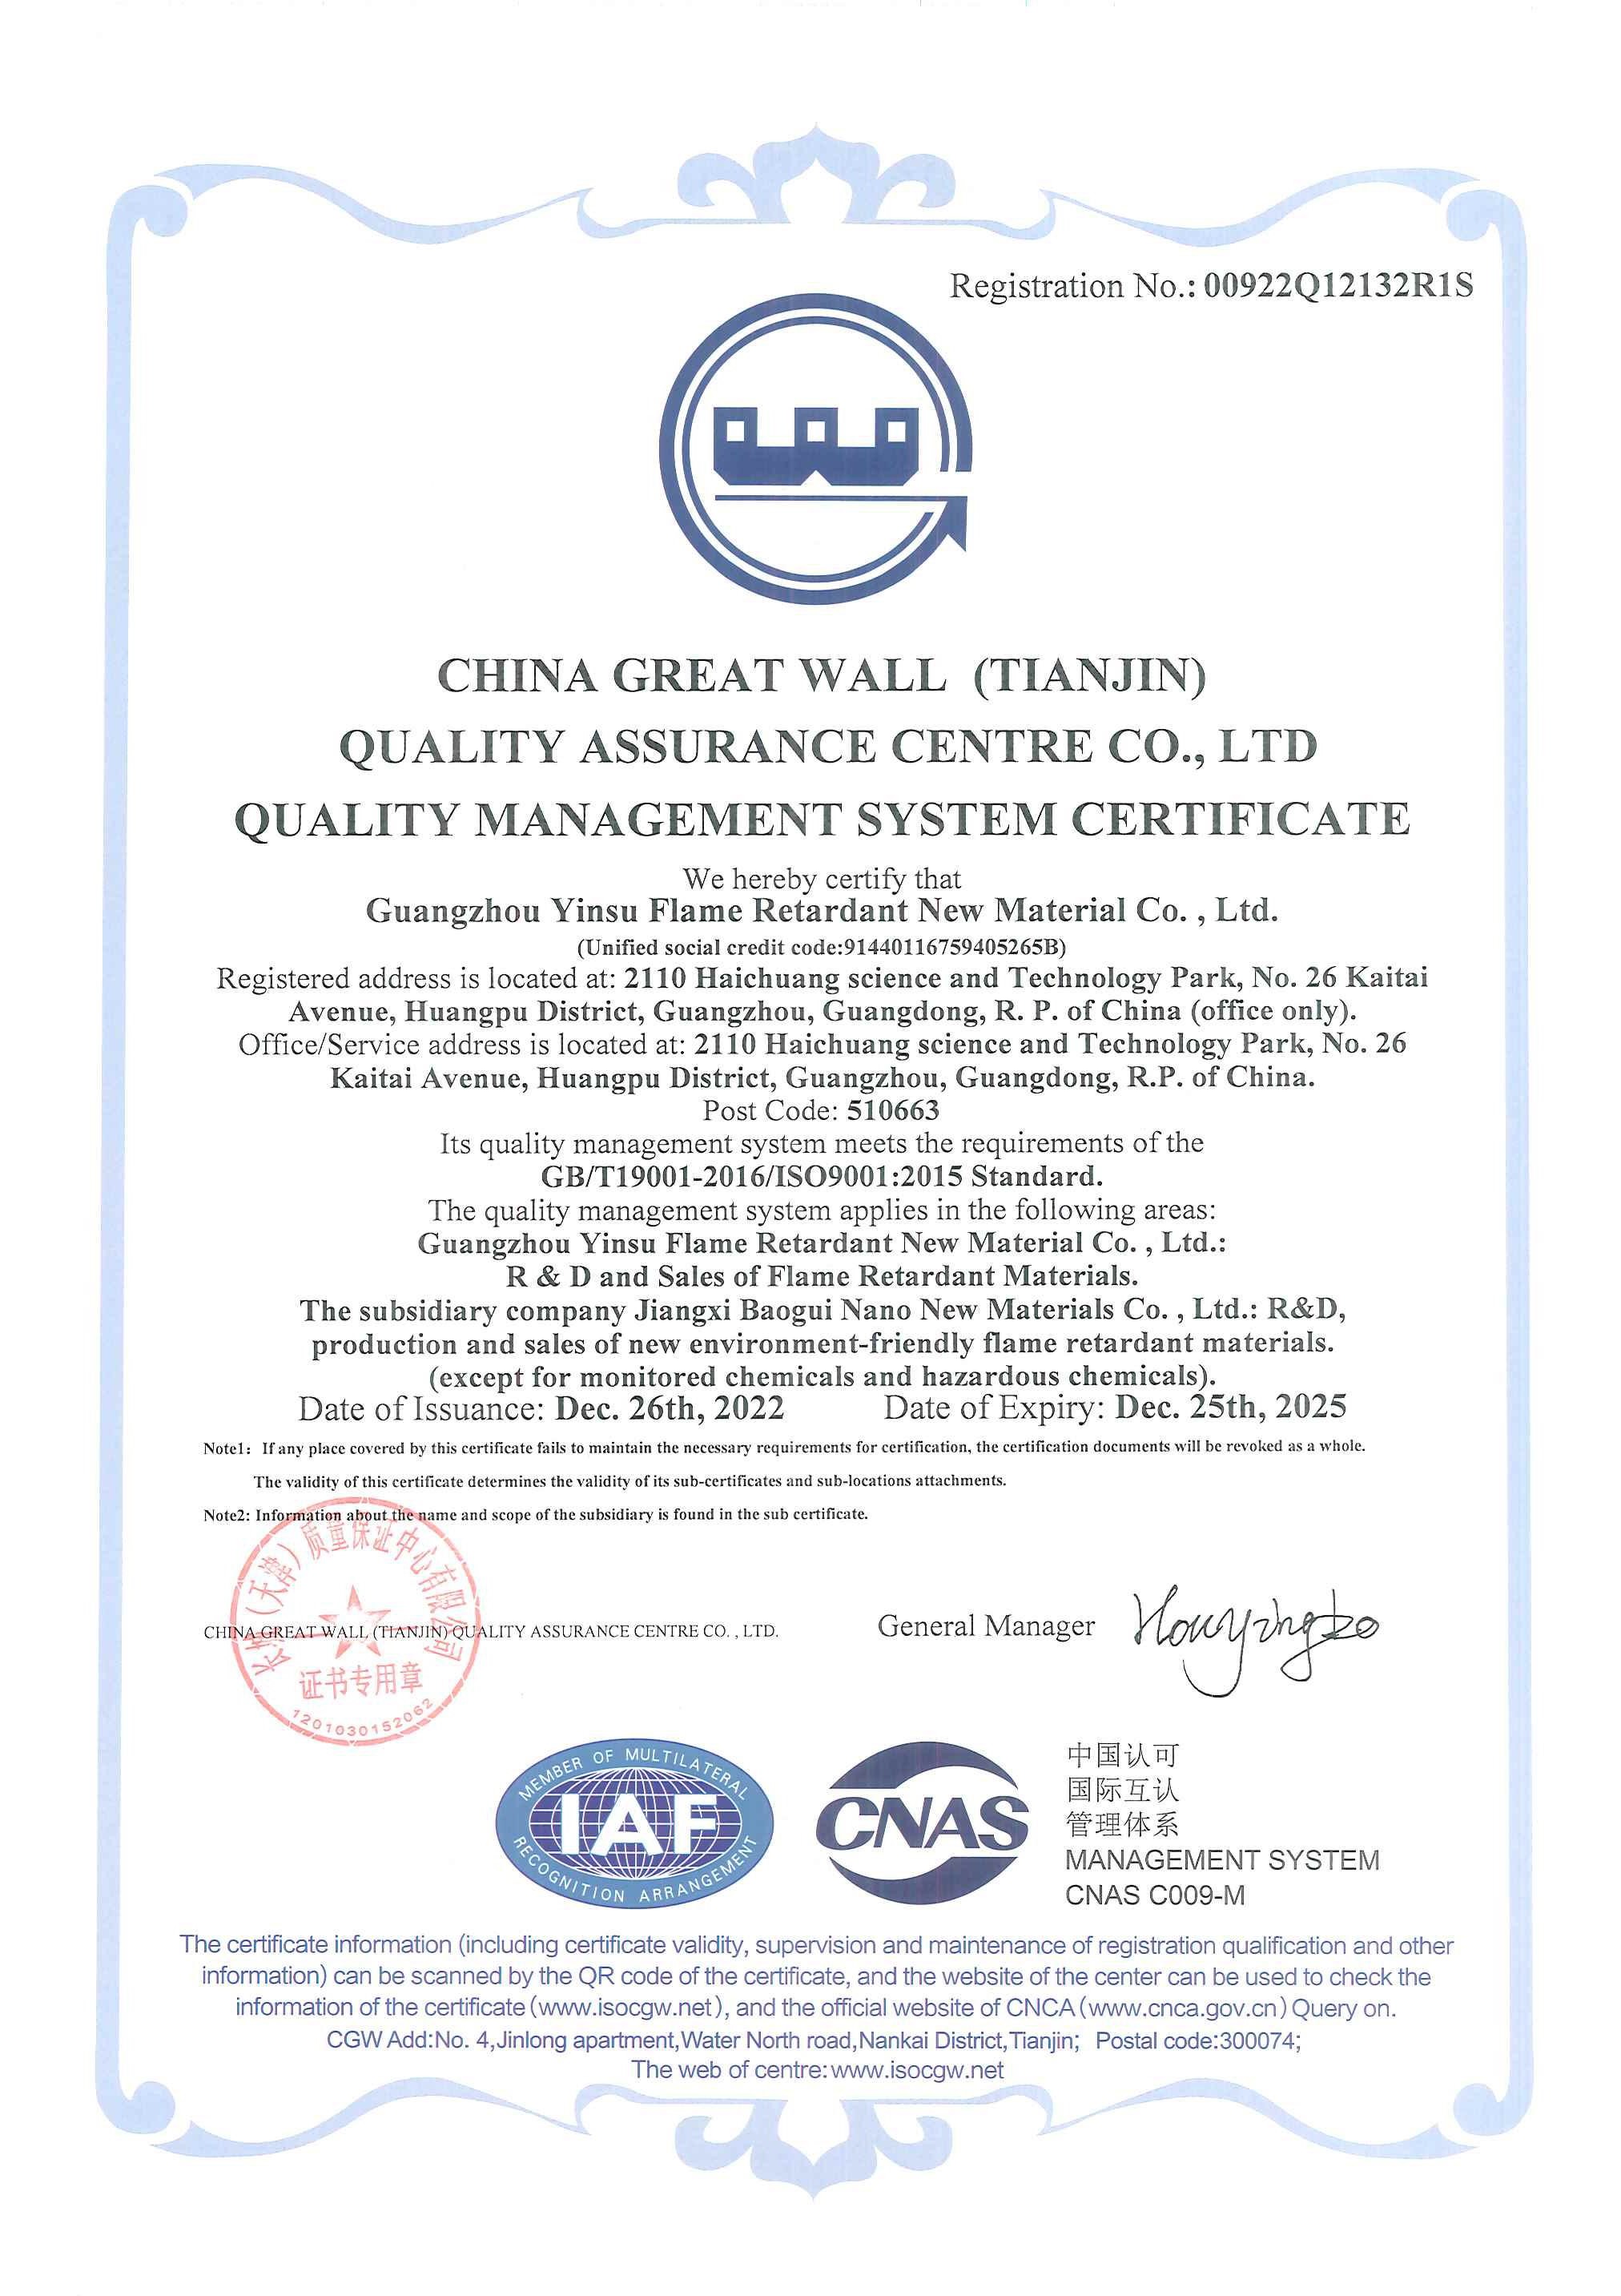 تهانينا: حصلت شركة Yinsu على شهادة ISO9001 للمرة الثانية: علامة التميز في إدارة الجودة.